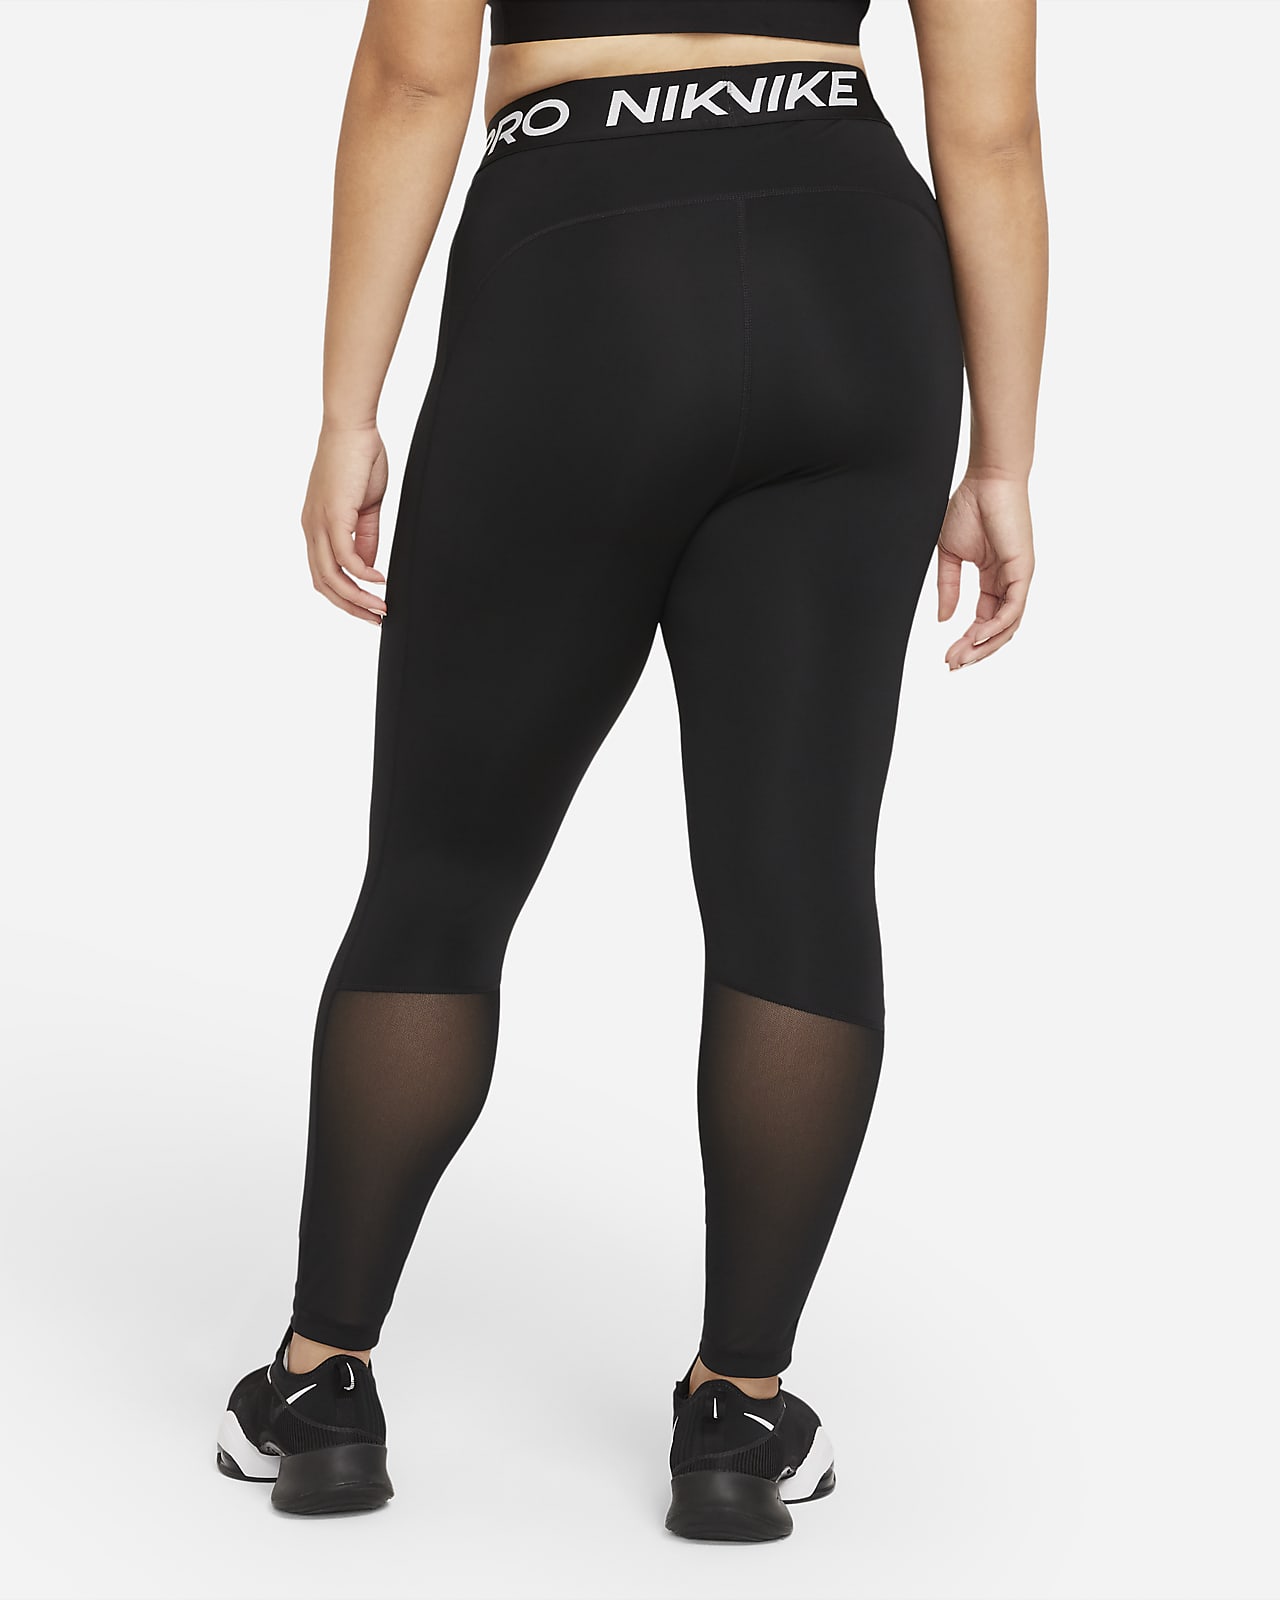 Legging femme Nike Pro 365 - Pantalons / leggings - Femme